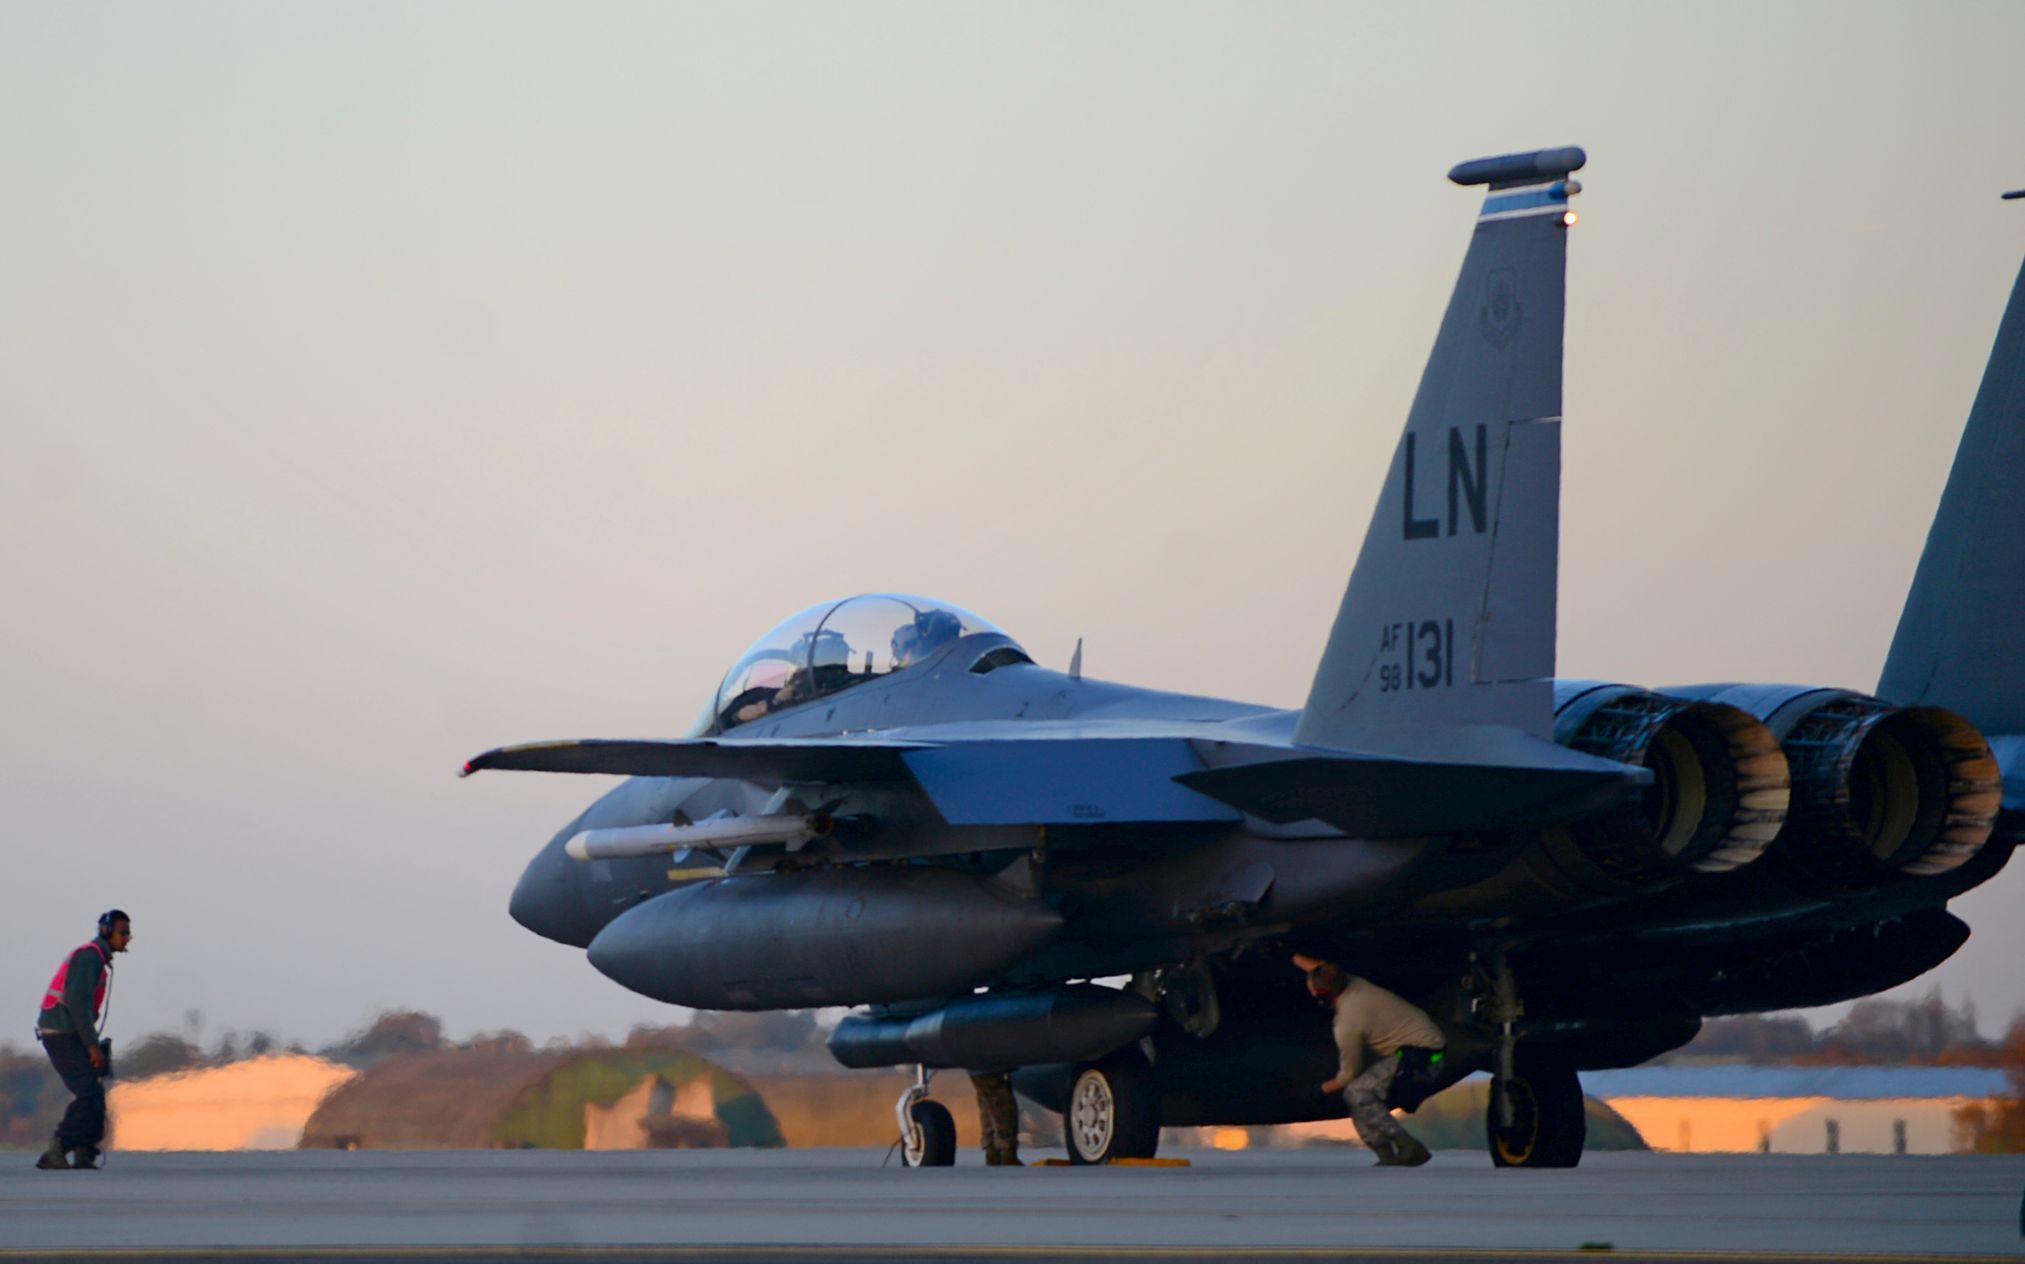 Letecká operace USA proti Islámskému státu